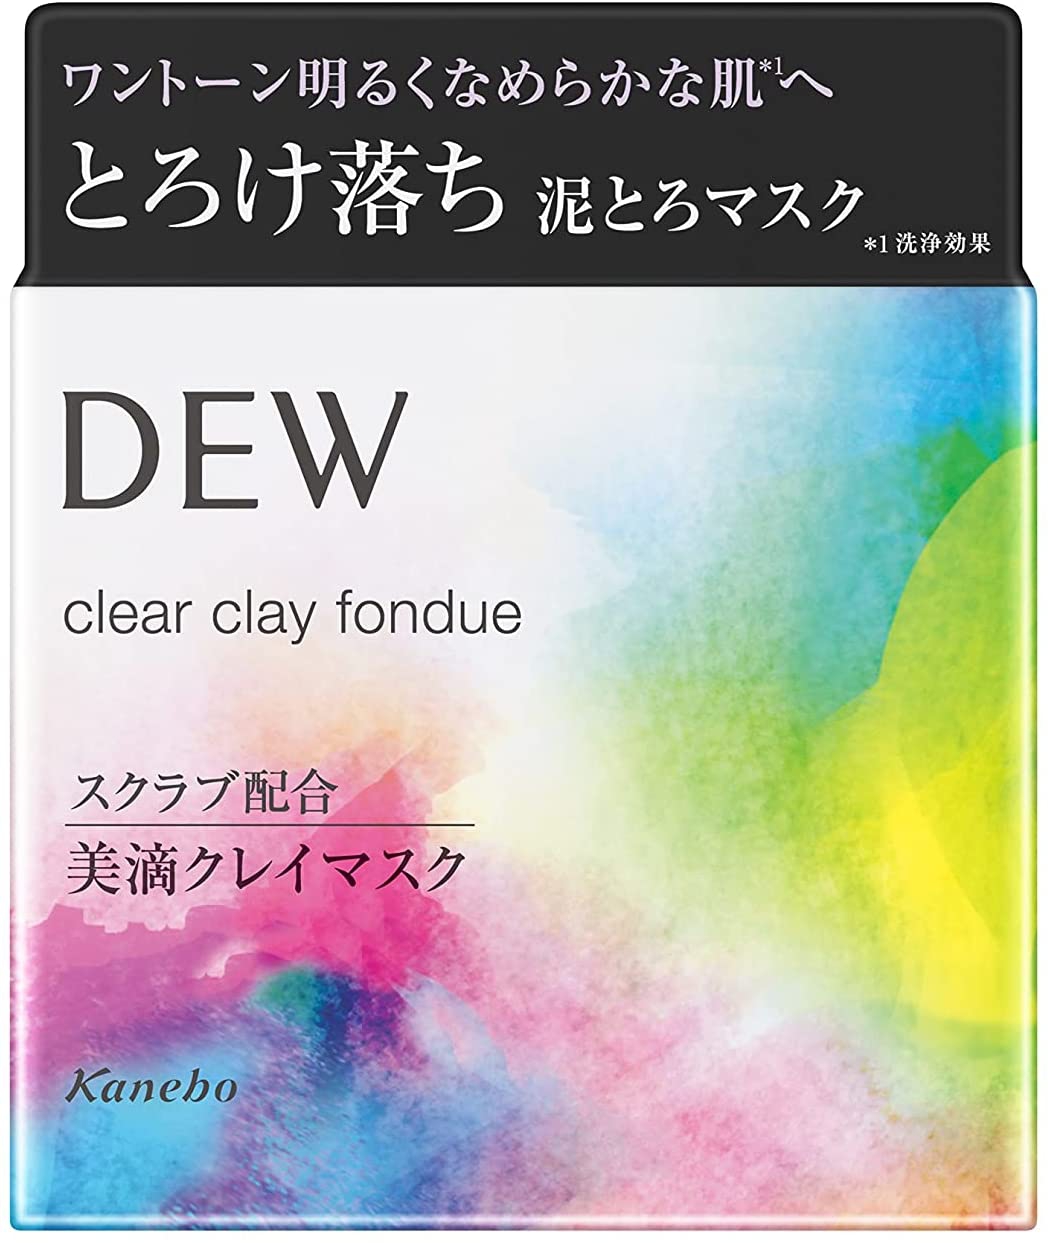 DEW(デュウ) クリア クレイ フォンデュの商品画像サムネ10 